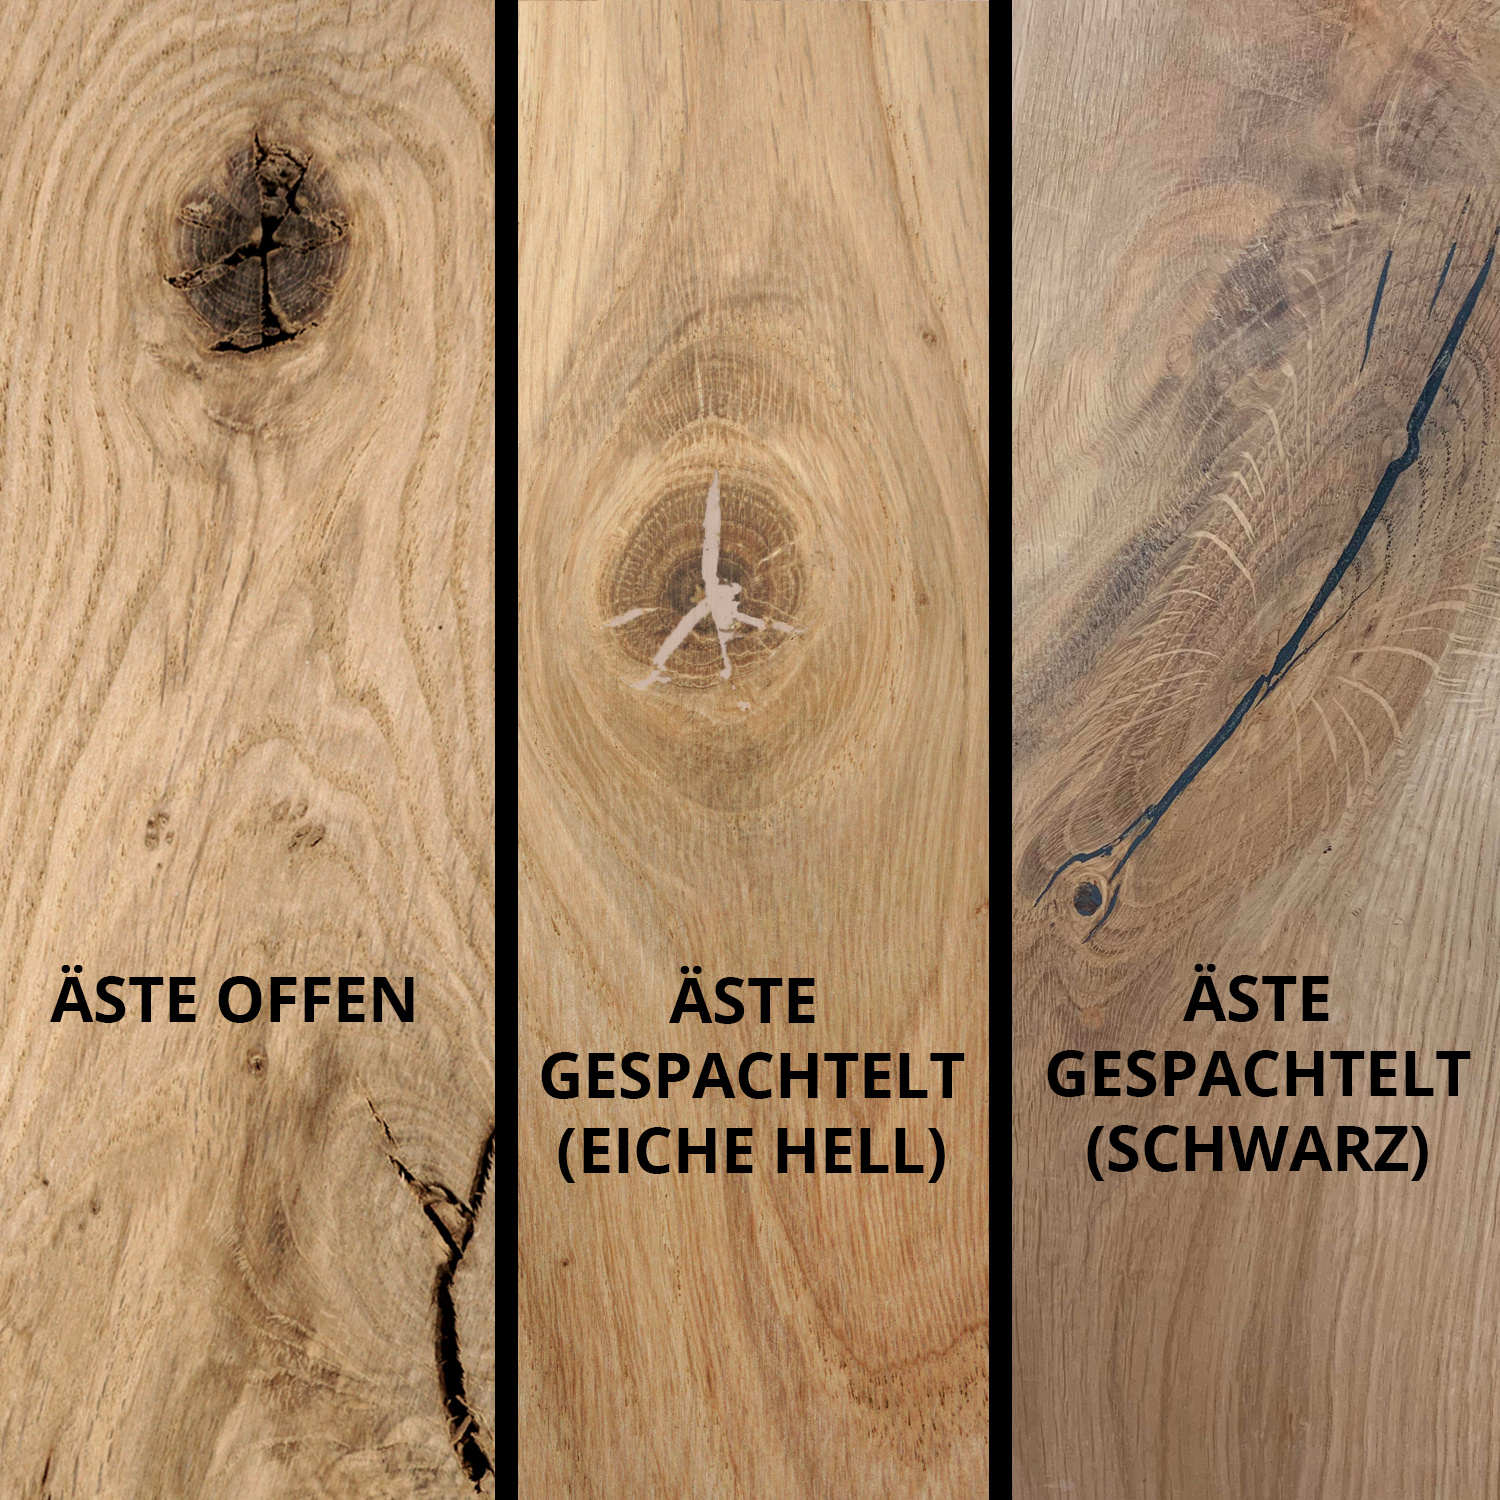  Tischplatte Eiche rund nach Maß - 6 cm dick (2-lagig) - Eichenholz rustikal - Durchmesser: 30 - 180 cm - Eiche Tischplatte rund massiv - verleimt & künstlich getrocknet (HF 8-12%)